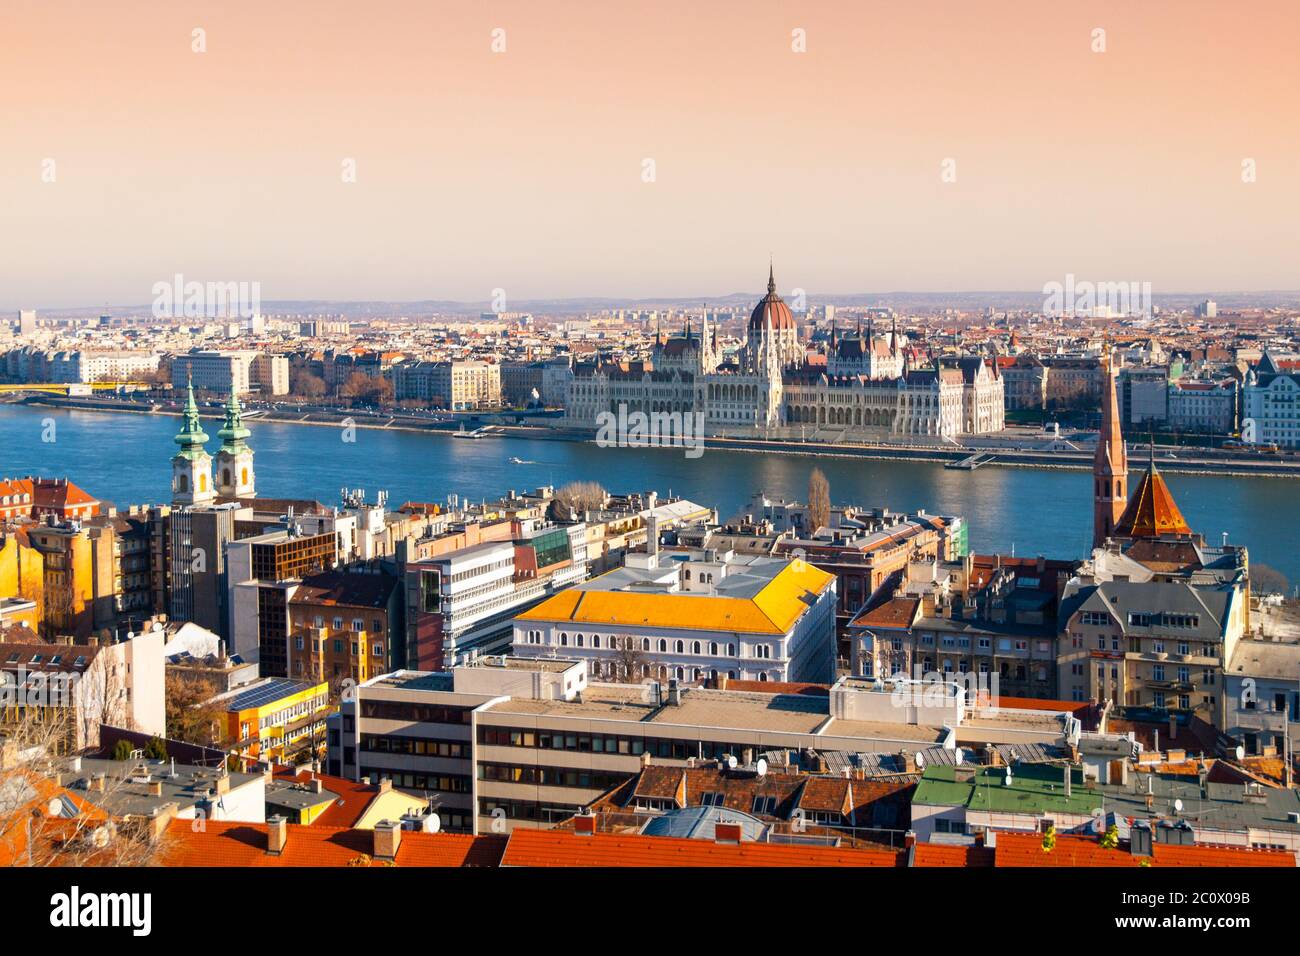 Ungarisches Parlament, aka Orszaghaz, historisches Gebäude am Donauufer im Zentrum von Budapest, Ungarn, Europa. UNESCO-Weltkulturerbe. Stockfoto